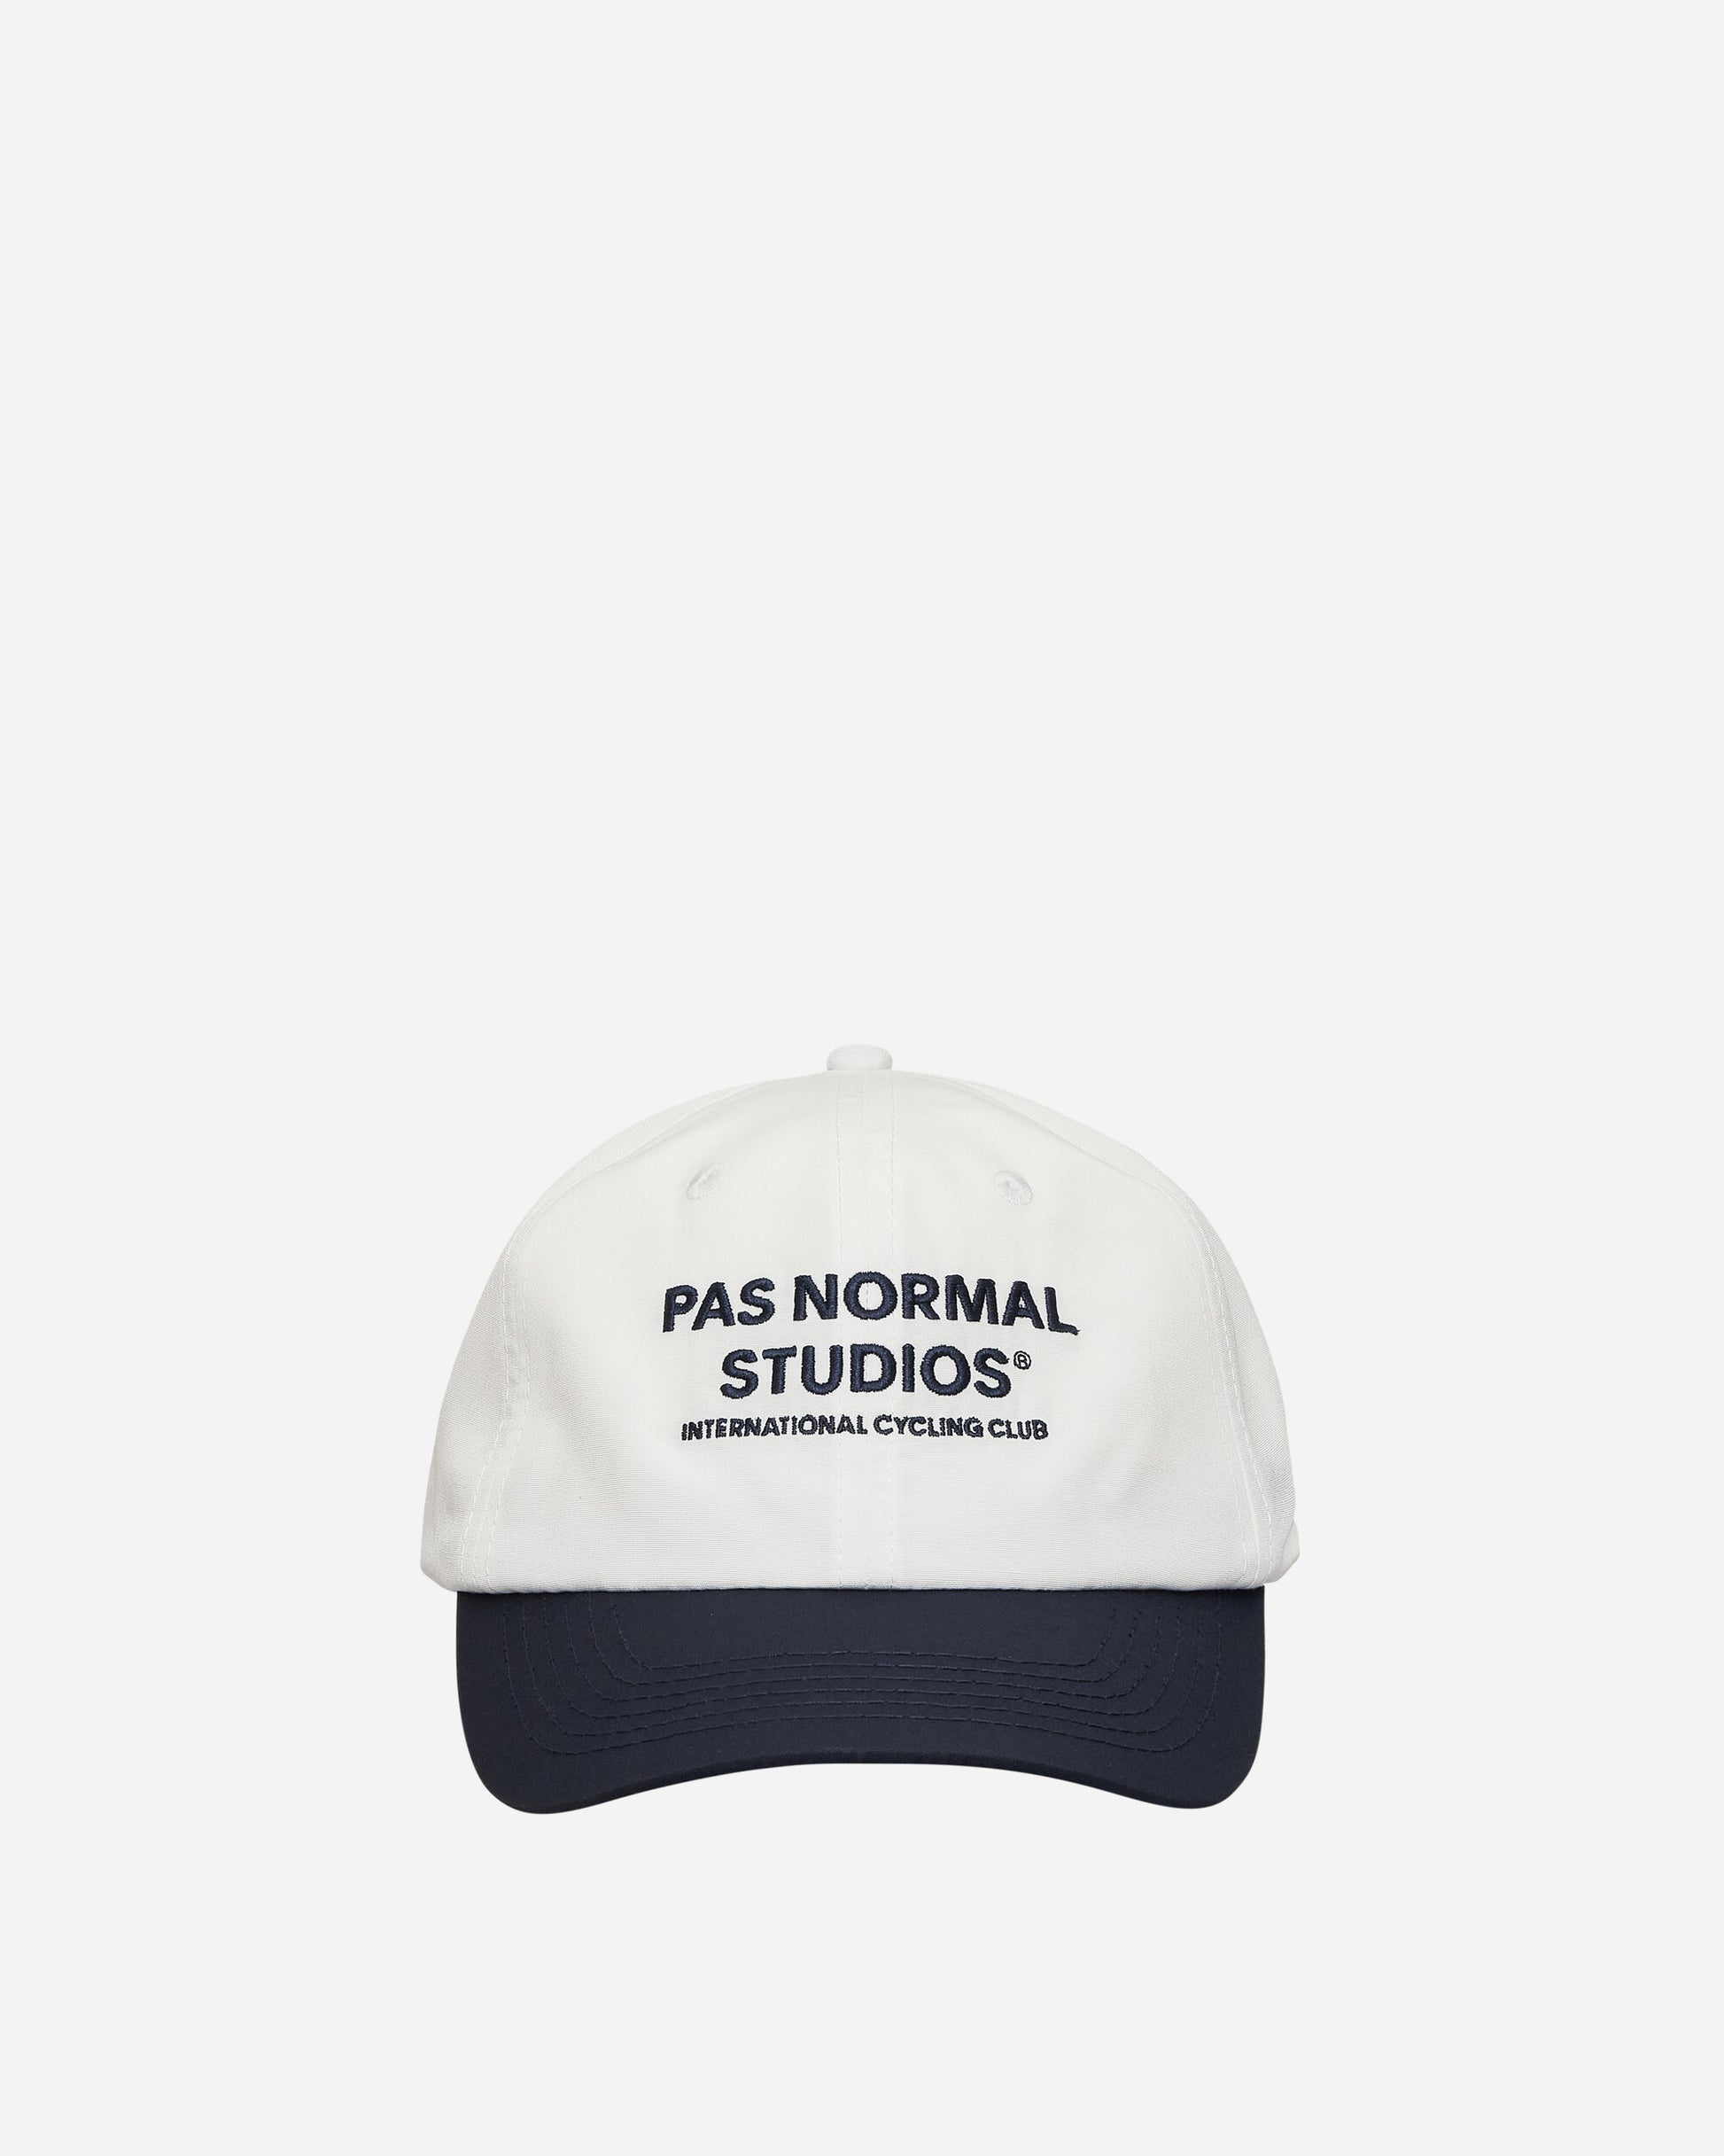 Pas Normal Studios Off-Race Cap Off White-Navy Hats Caps NAN2027AF 1563